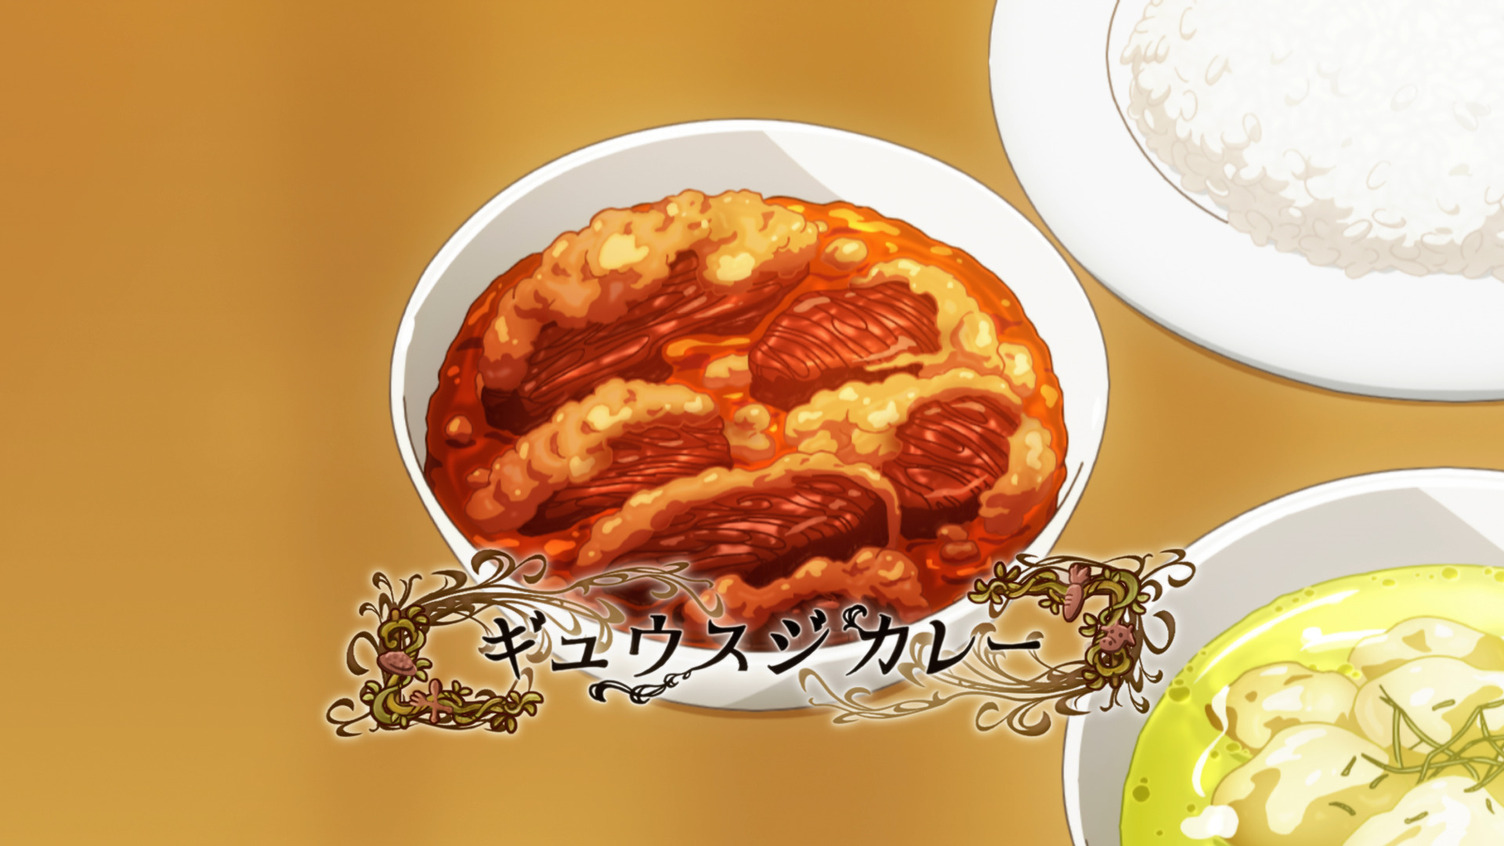 #Feature: Welche Anime-Charaktere sollten Kochwettbewerbsshows moderieren?